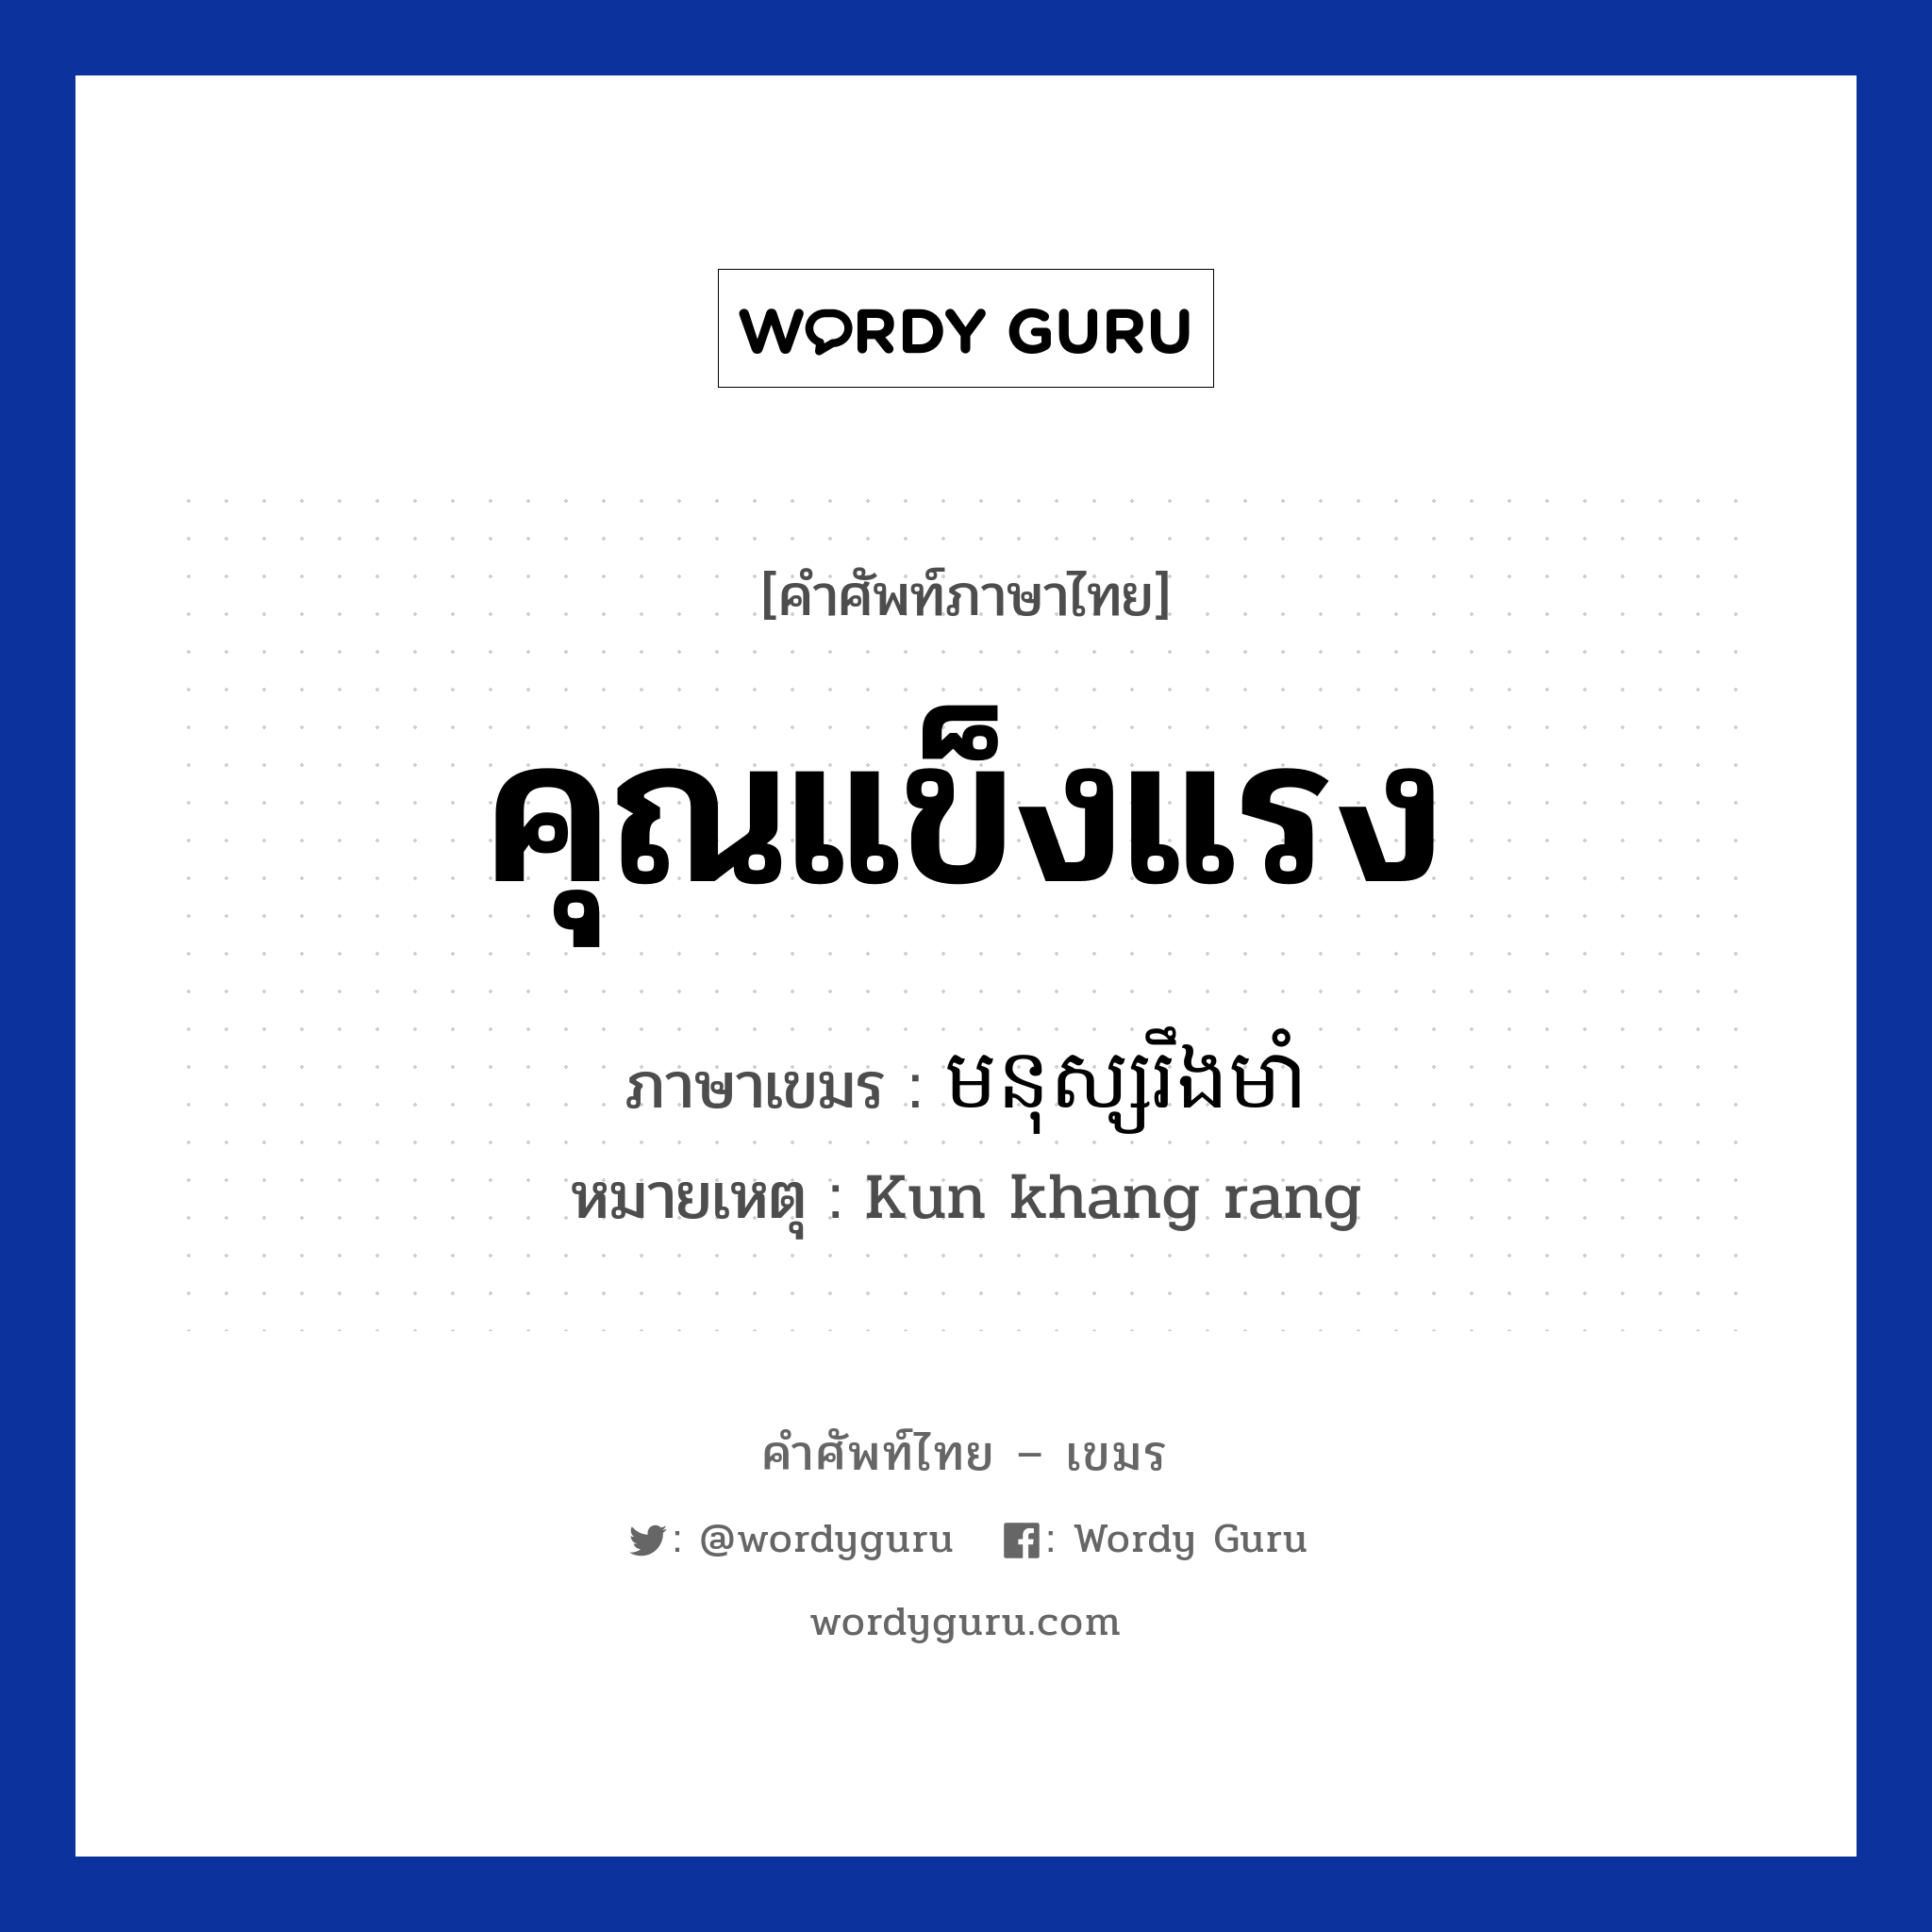 คุณแข็งแรง ภาษาเขมรคืออะไร, คำศัพท์ภาษาไทย - เขมร คุณแข็งแรง ภาษาเขมร មនុស្សរឹងមាំ หมวด คำชม หมายเหตุ Kun khang rang Monus Rerng Muam หมวด คำชม